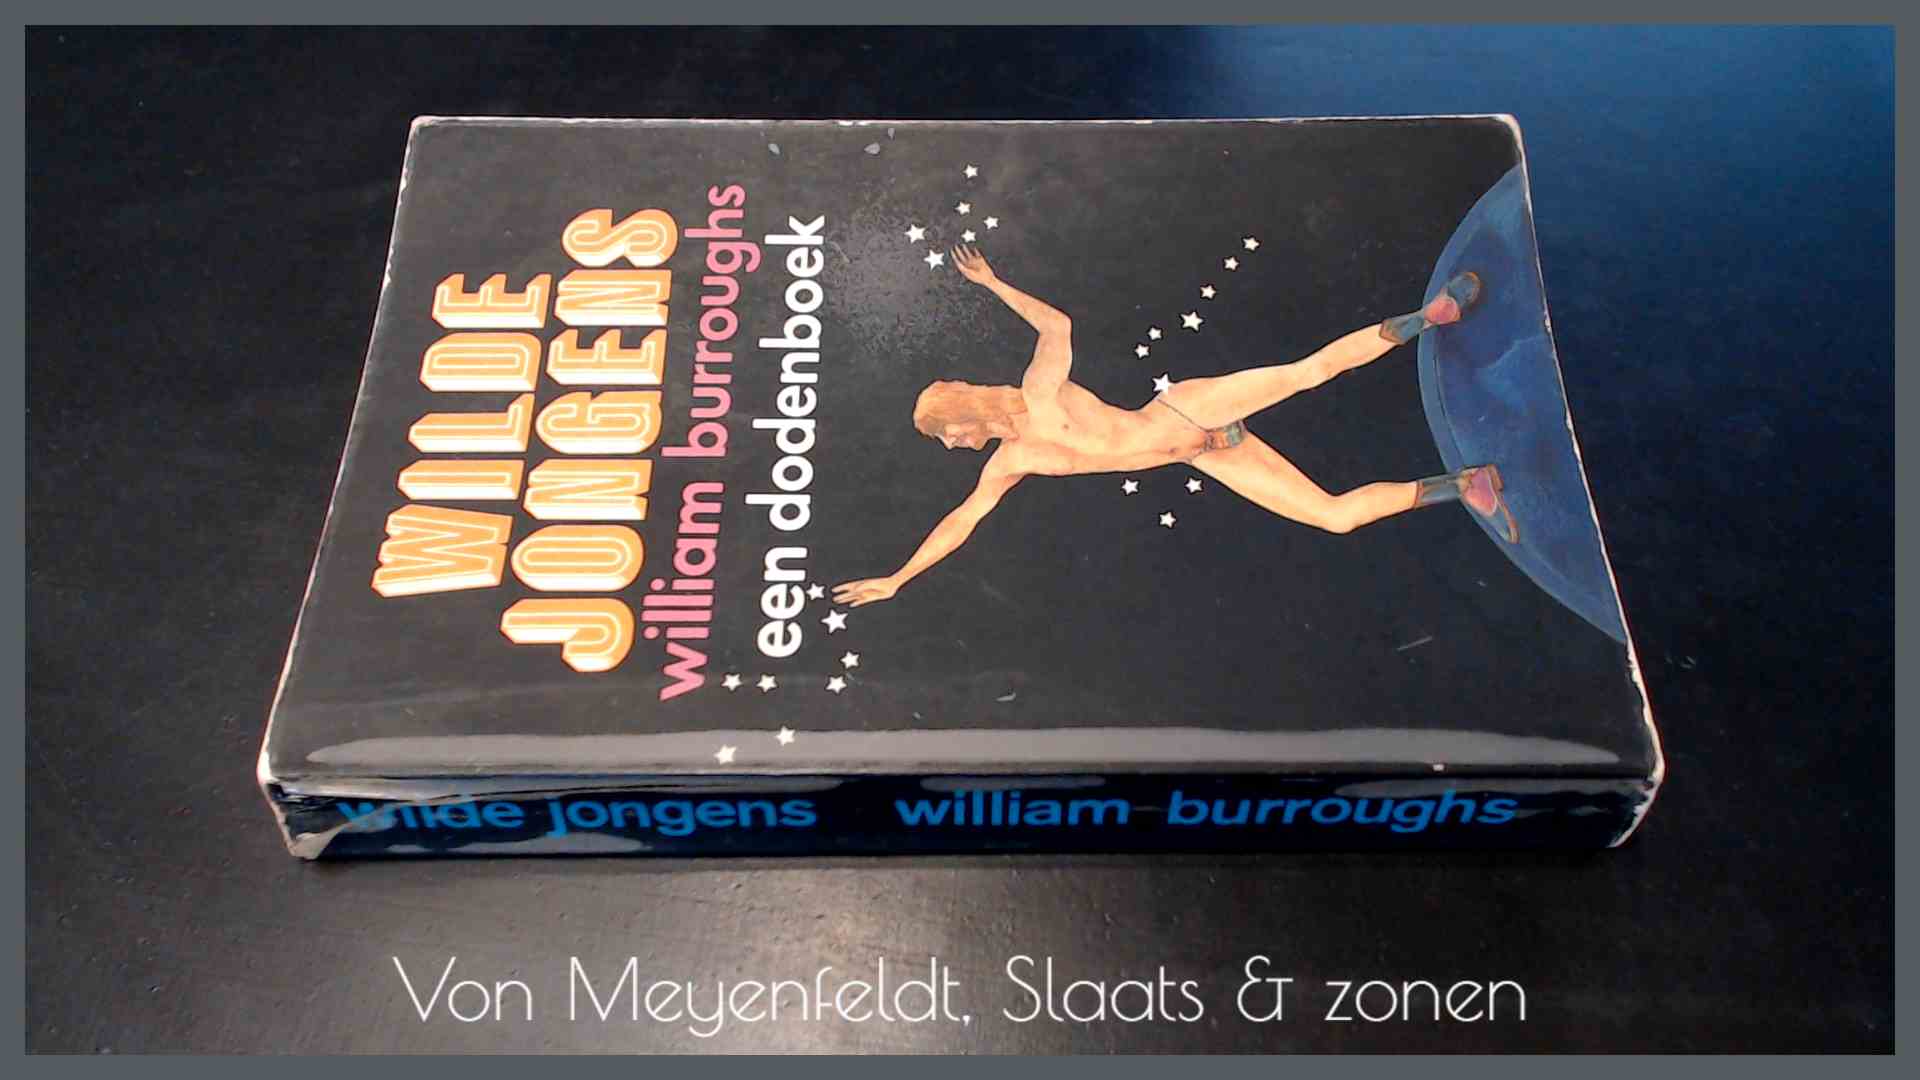 BURROUGHS, WILLIAM - Wilde jongens - Een dodenboek